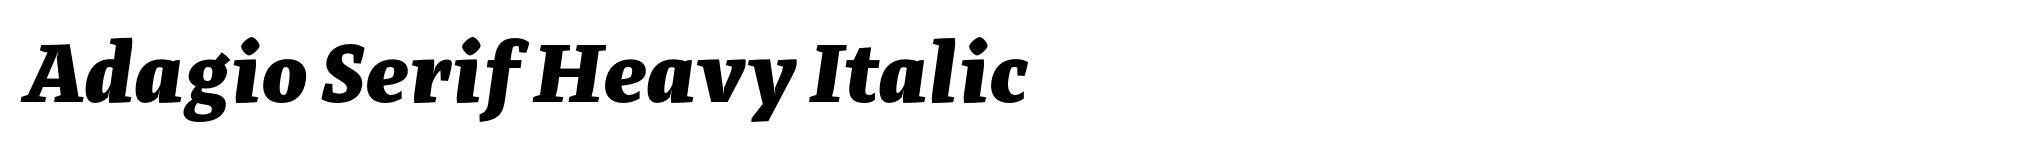 Adagio Serif Heavy Italic image